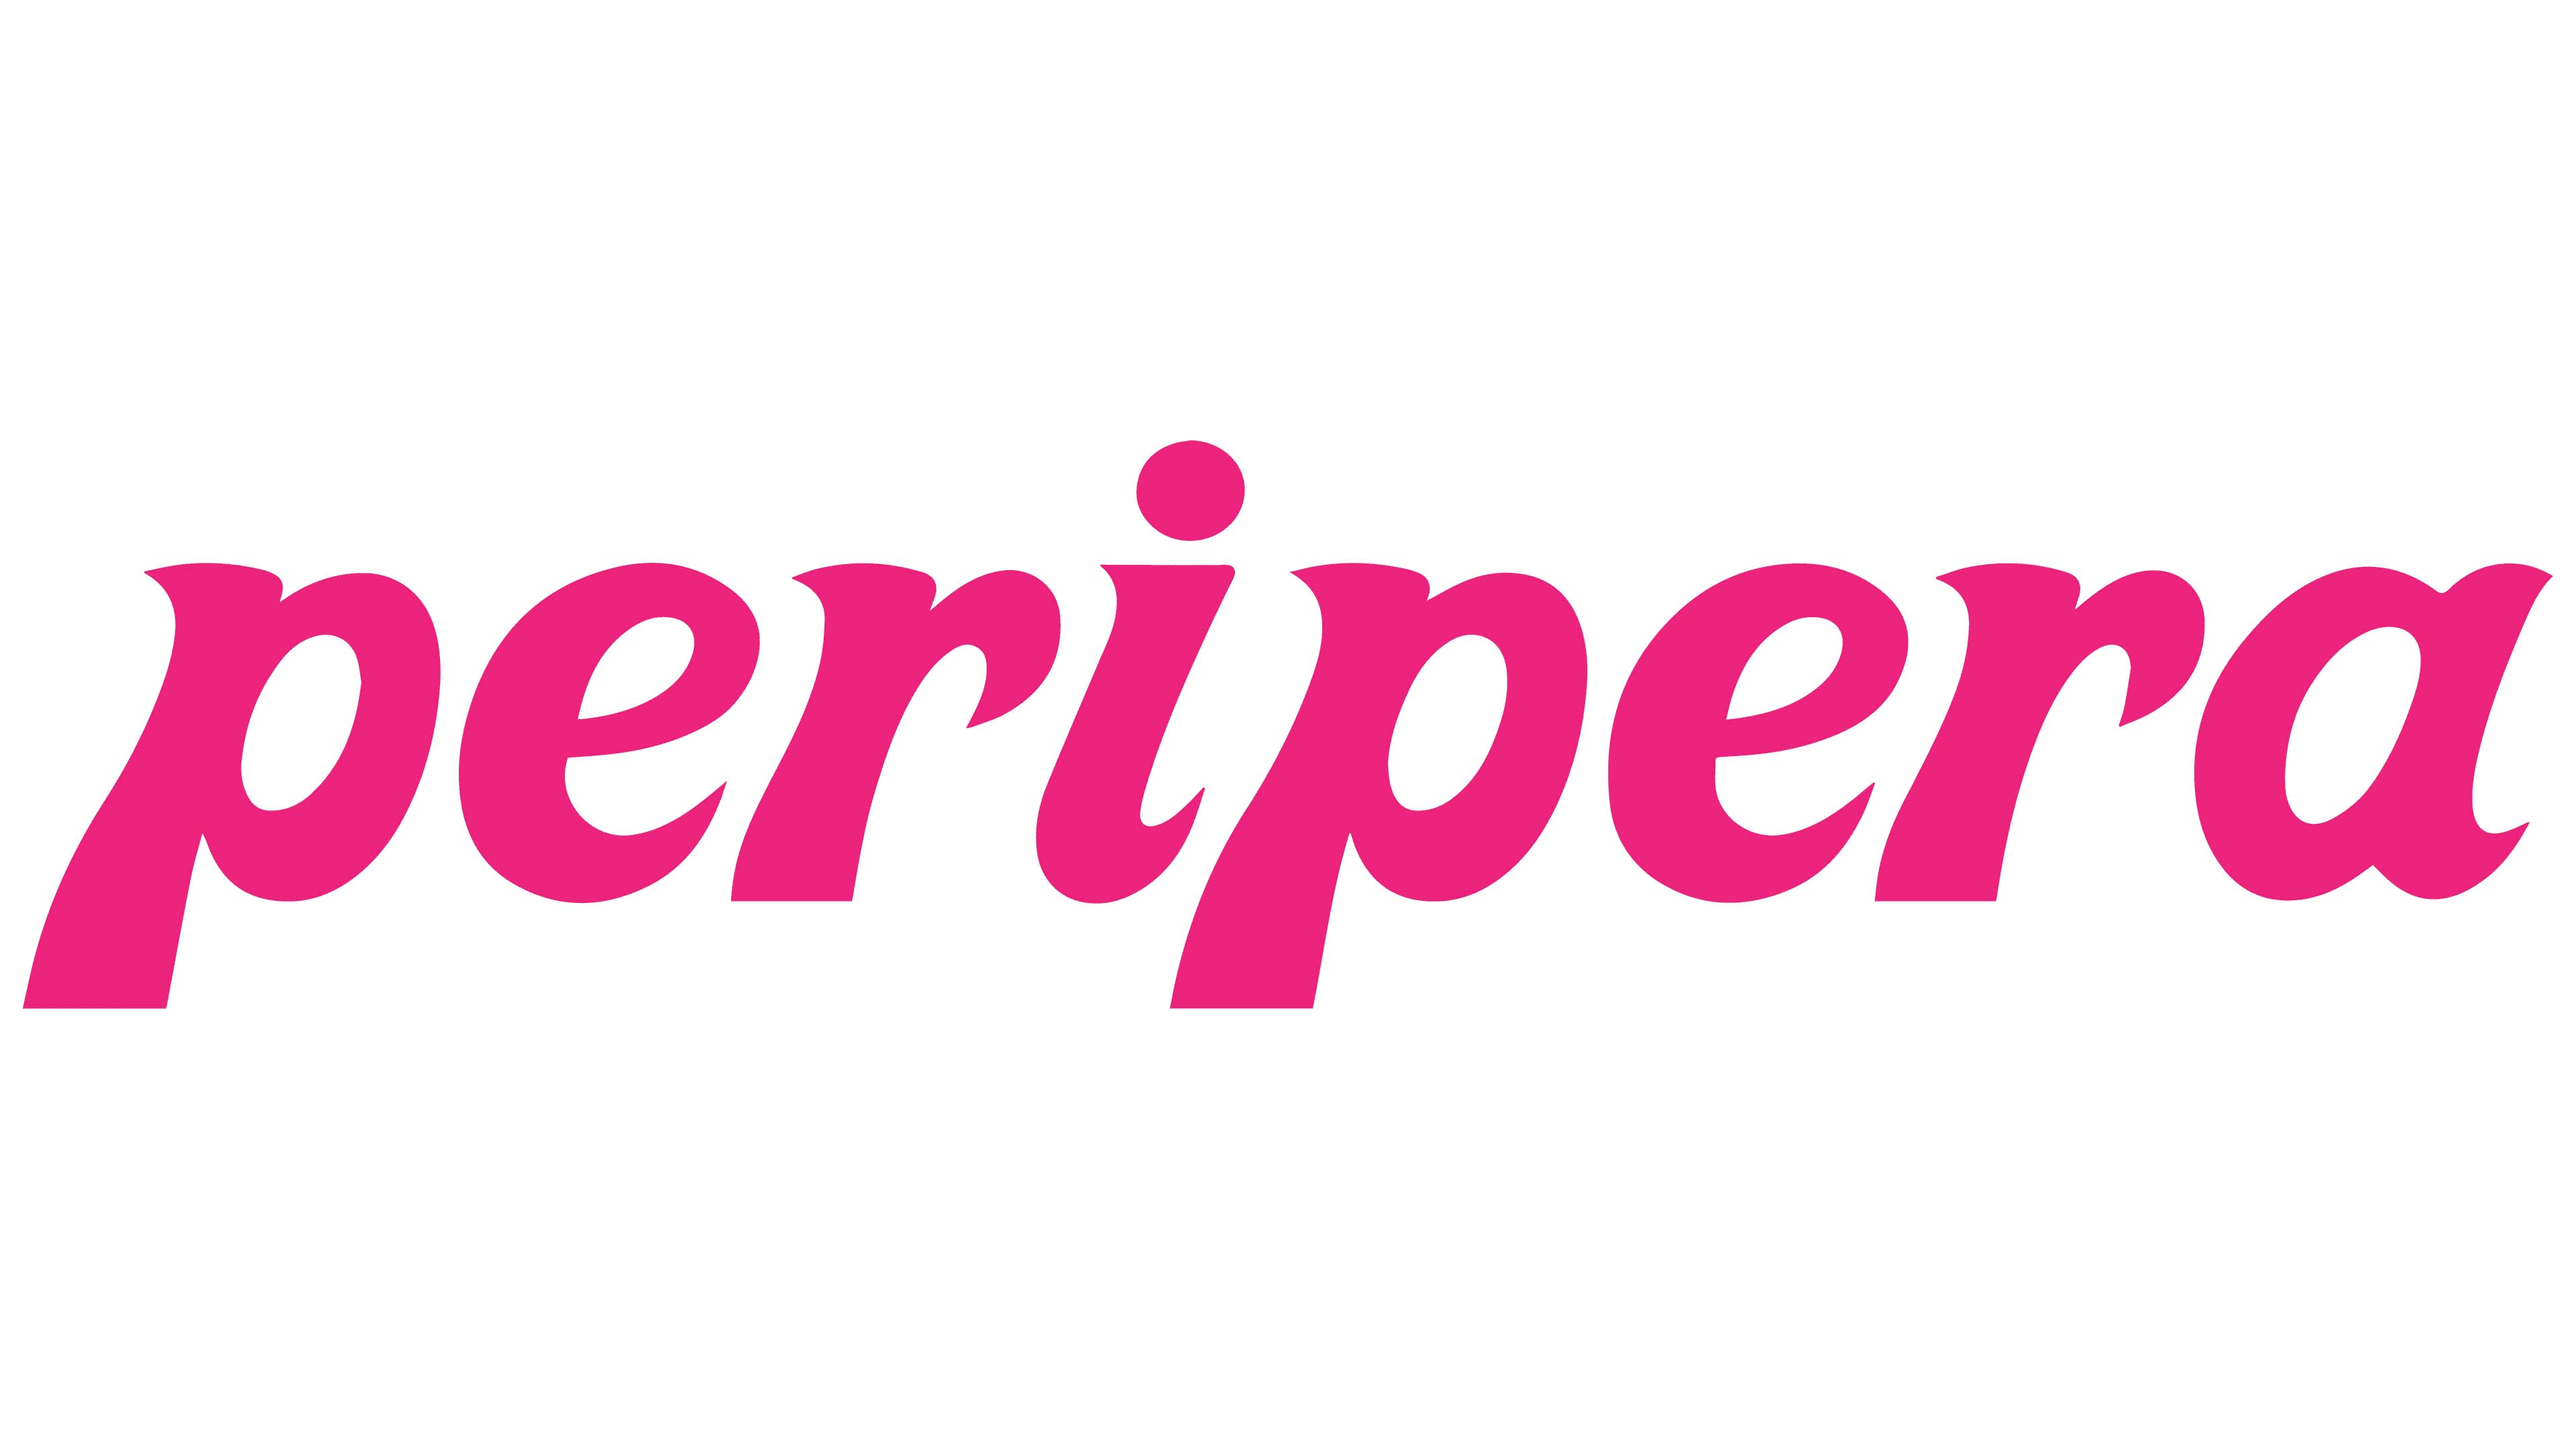 Mẫu thiết kế logo thương hiệu công ty PERIPERA